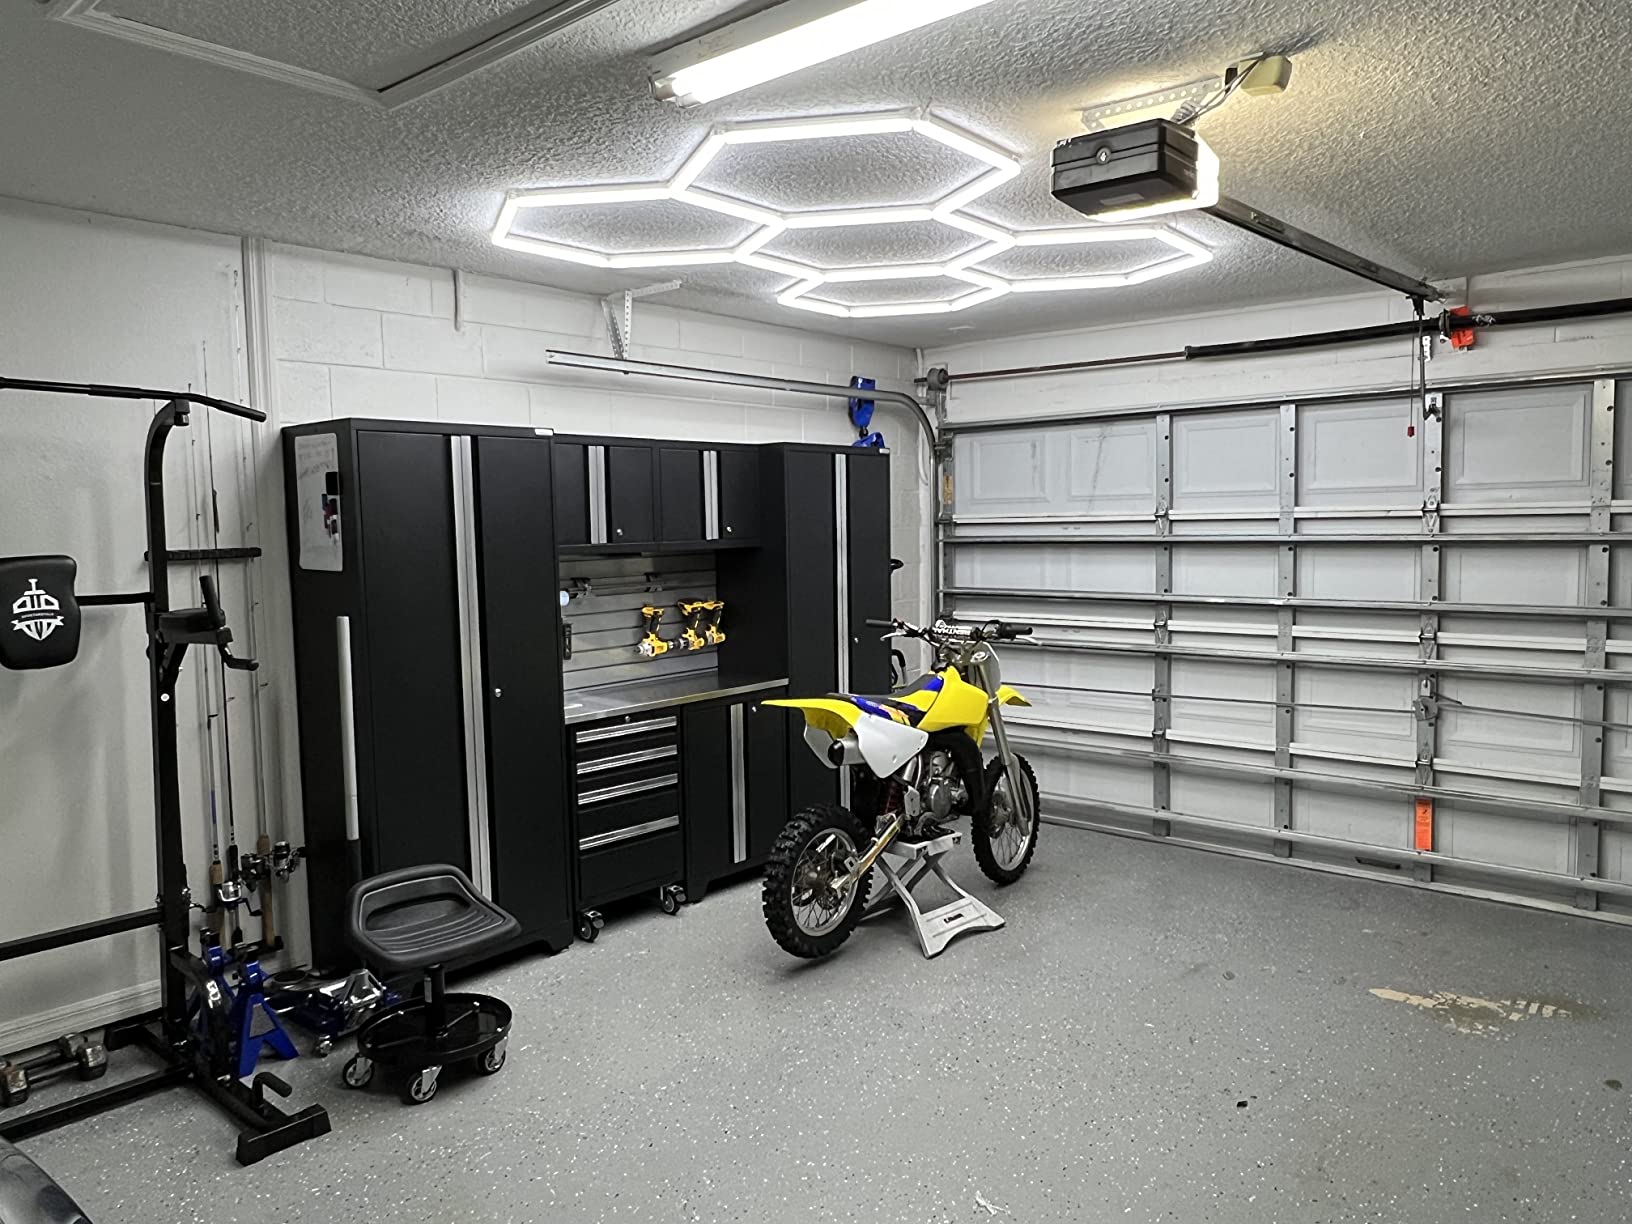 Small LED hexagon lighting kit in garage workshop